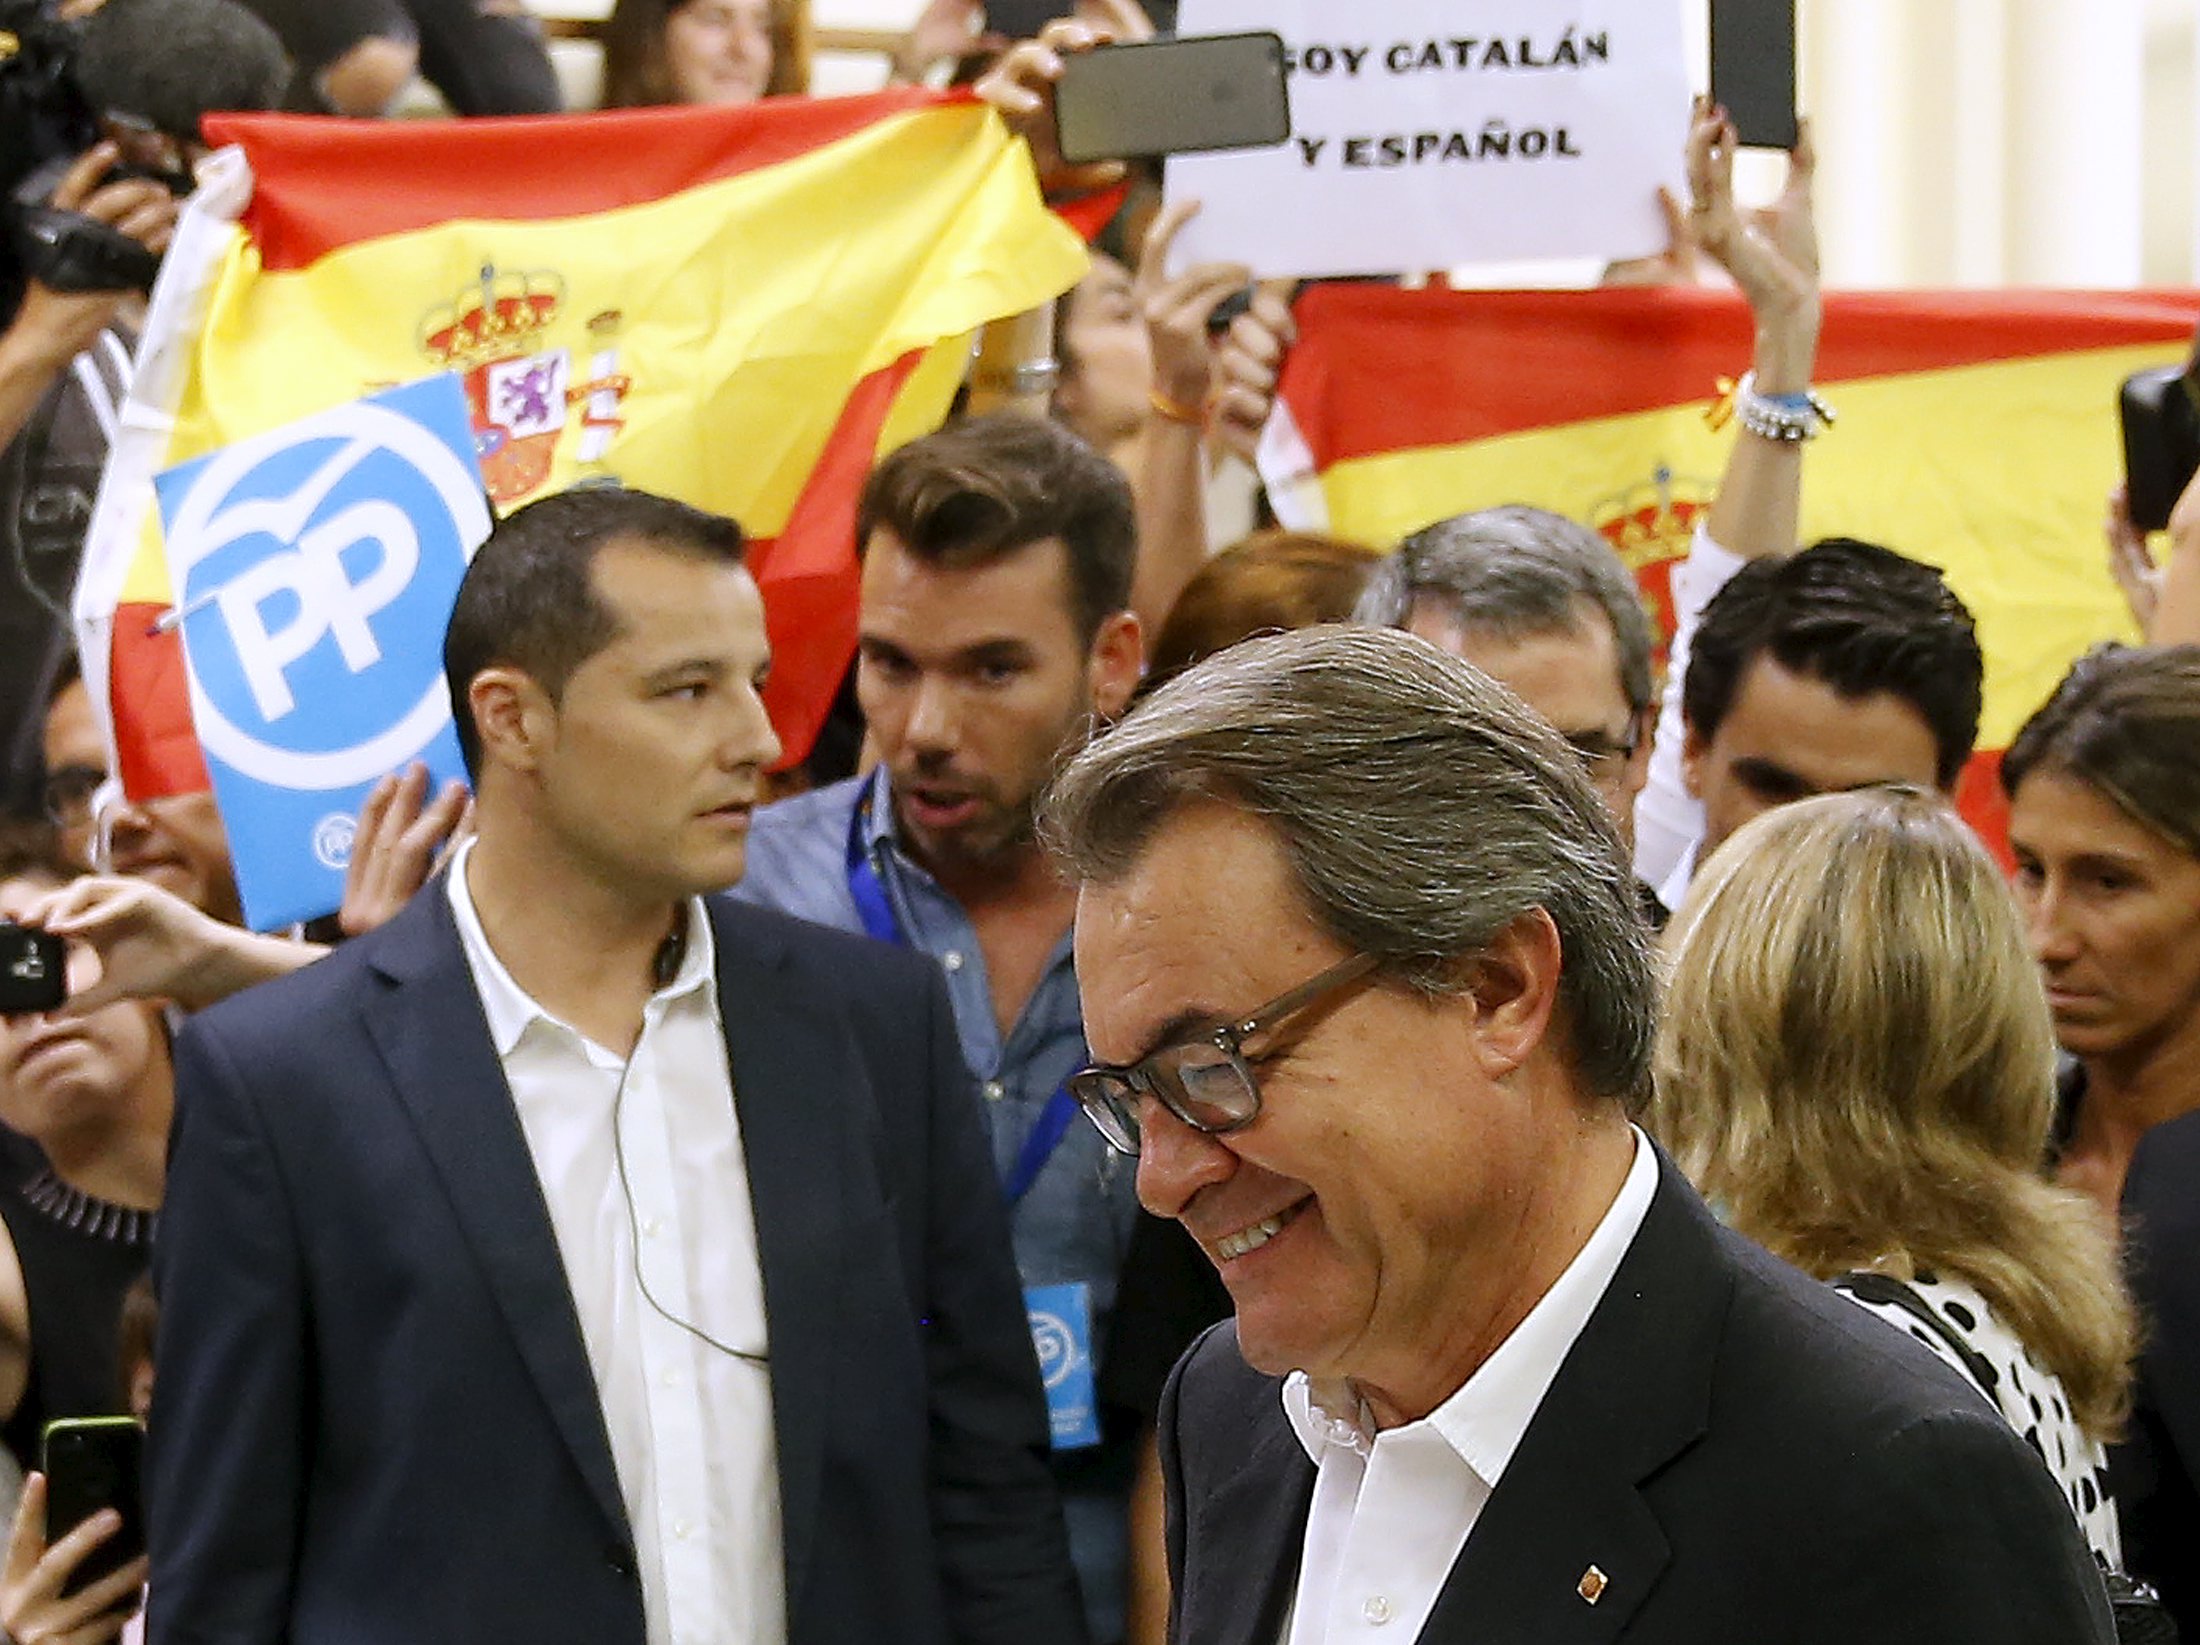 Elecciones son plebiscito sobre el futuro de Cataluña: Mas